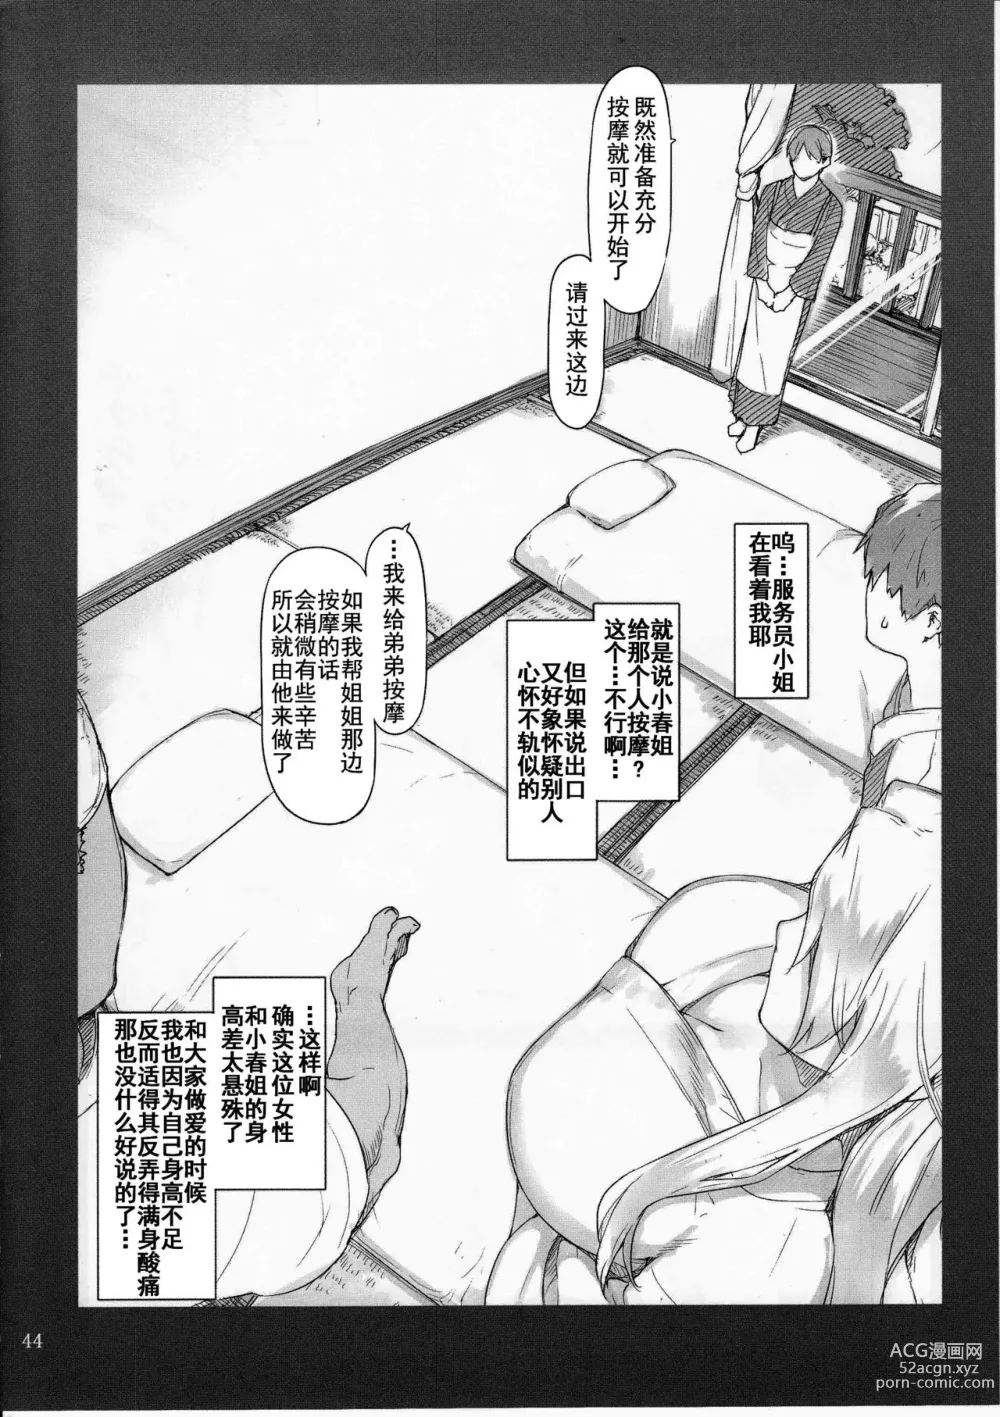 Page 43 of doujinshi 橘さん家ノ男性事情小説版挿絵